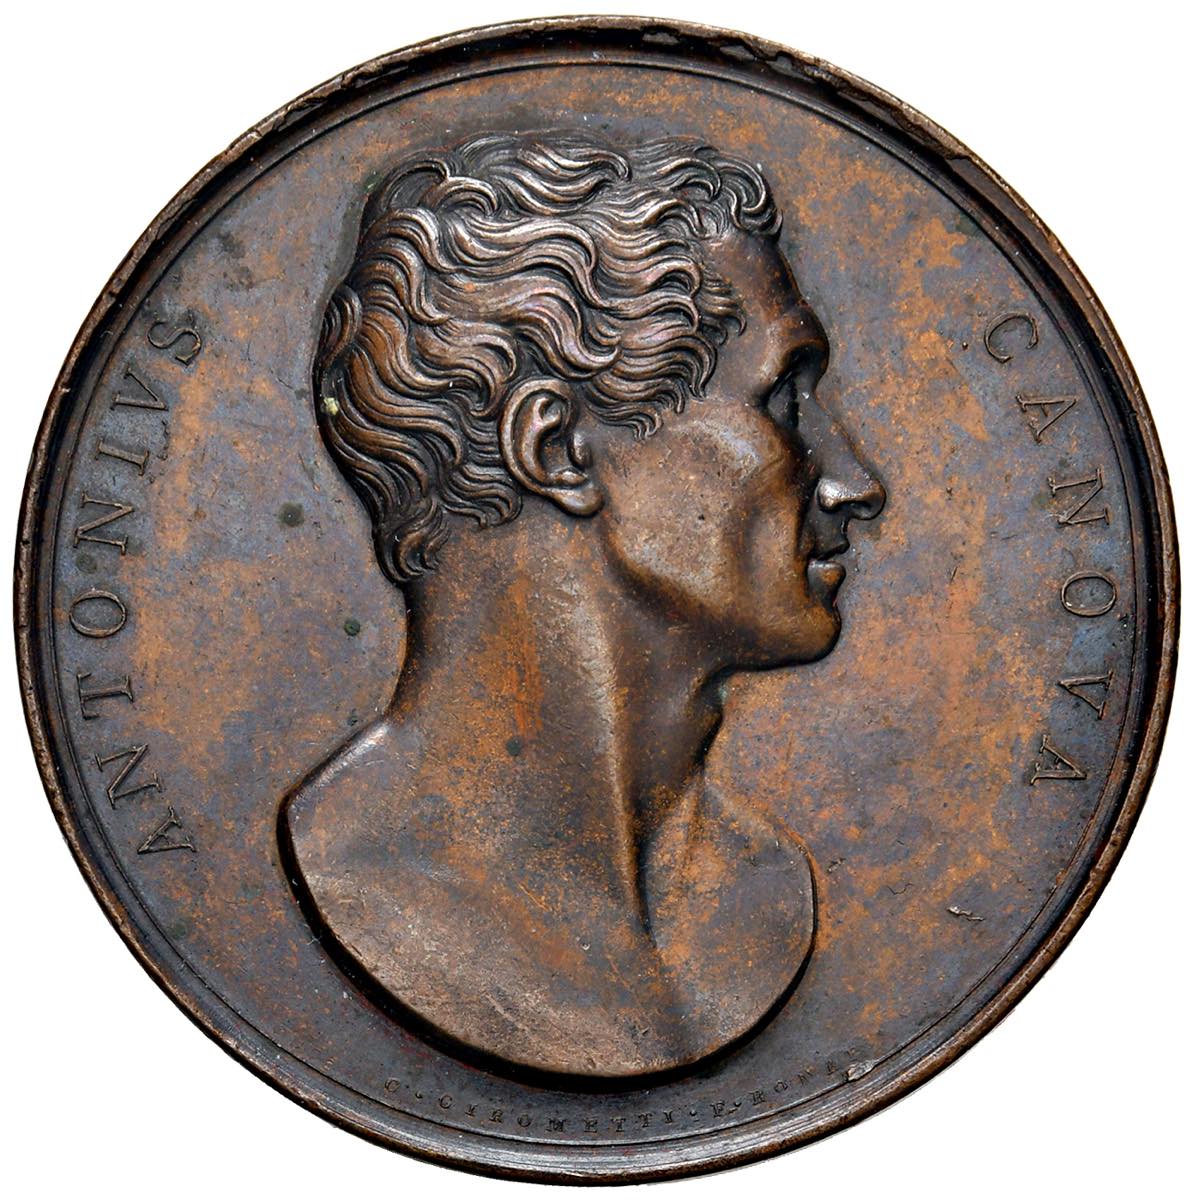 Antonio Canova Medaglia 1823 Per la sua morte – Opus: Girometti - AE (g 78,01 – Ø 53 mm)